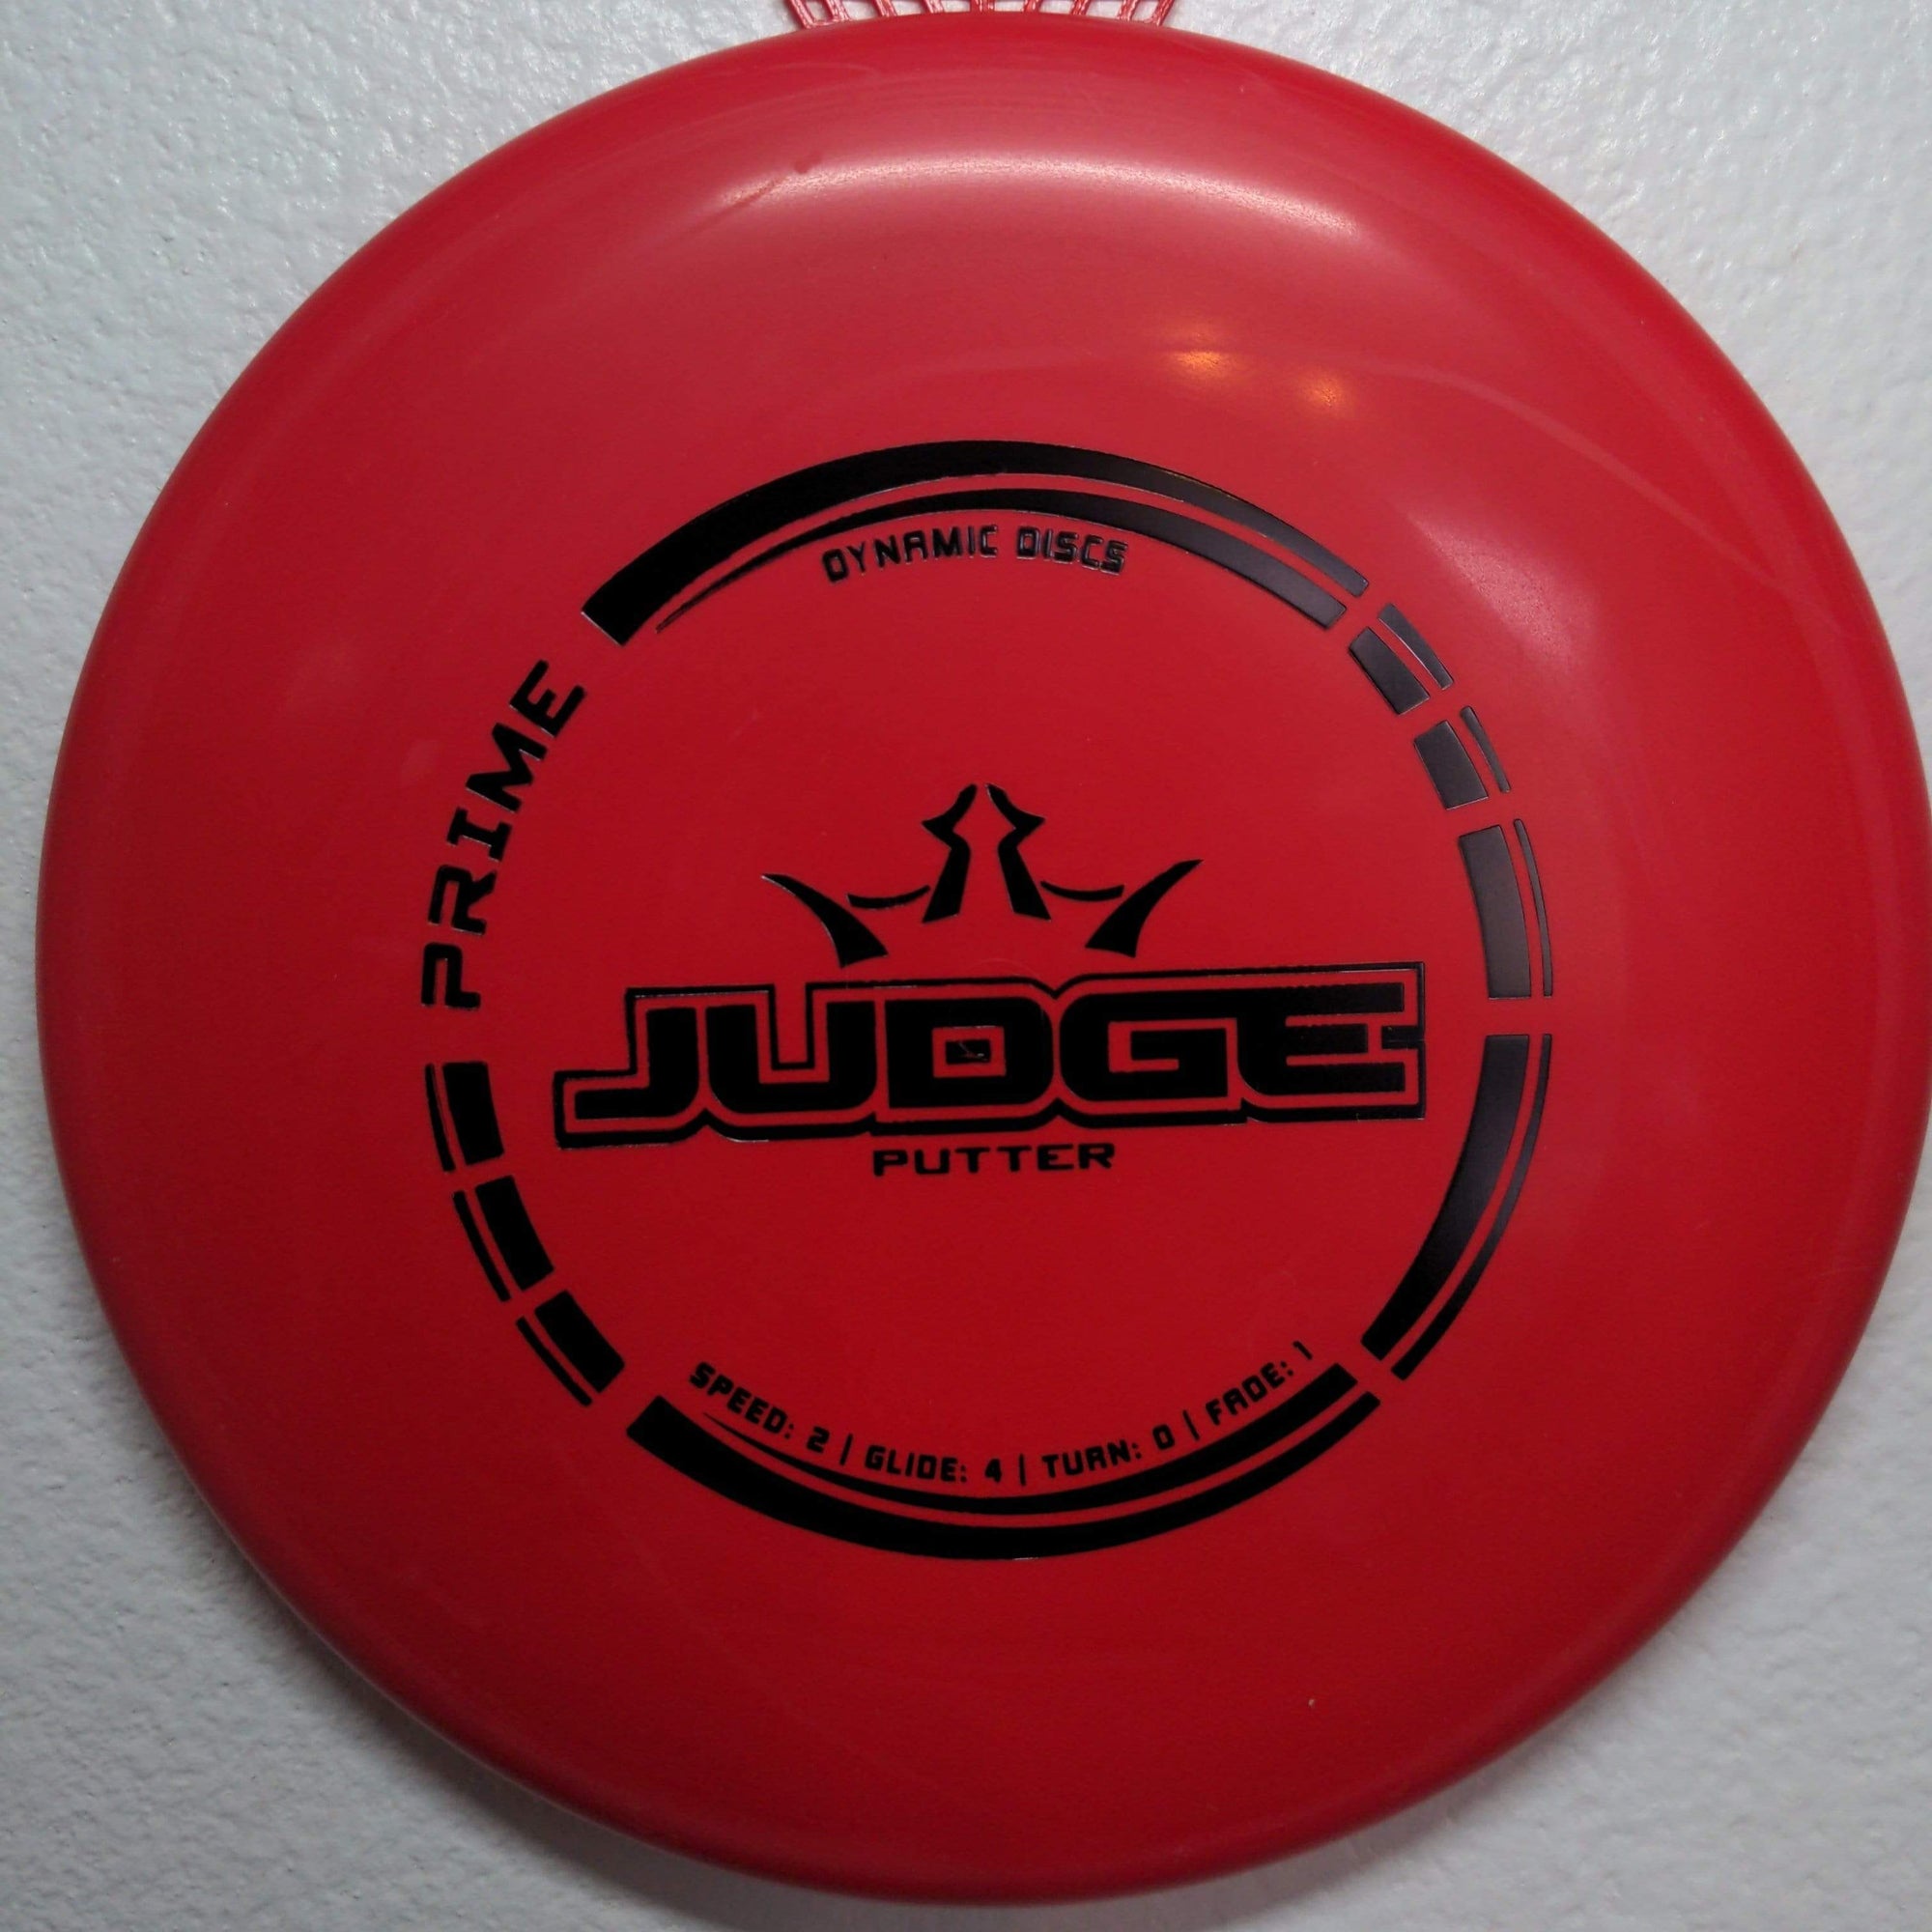 Dynamic Discs Putter Red Black Stamp Prime Judge 173-176g